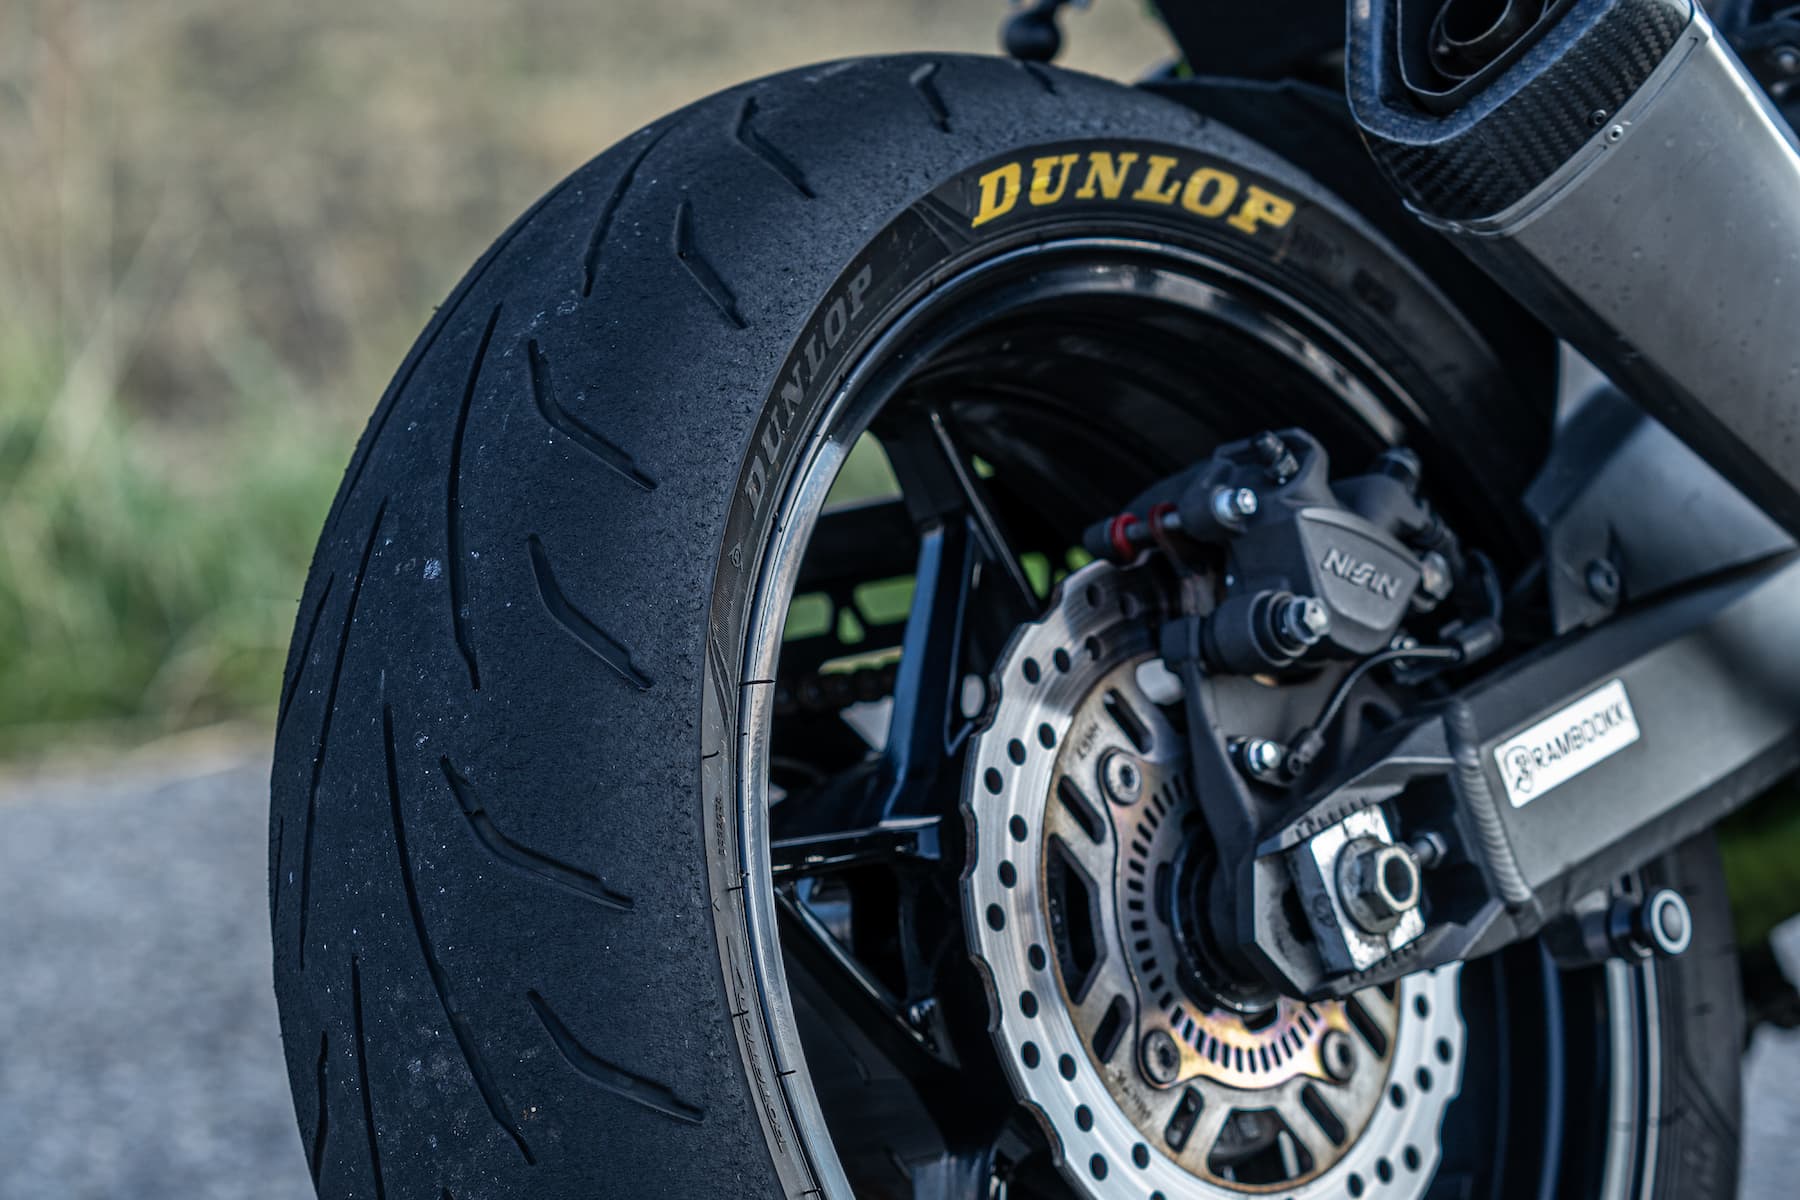 Llegan las nuevas medidas del Dunlop Qualifier Core también para tu moto